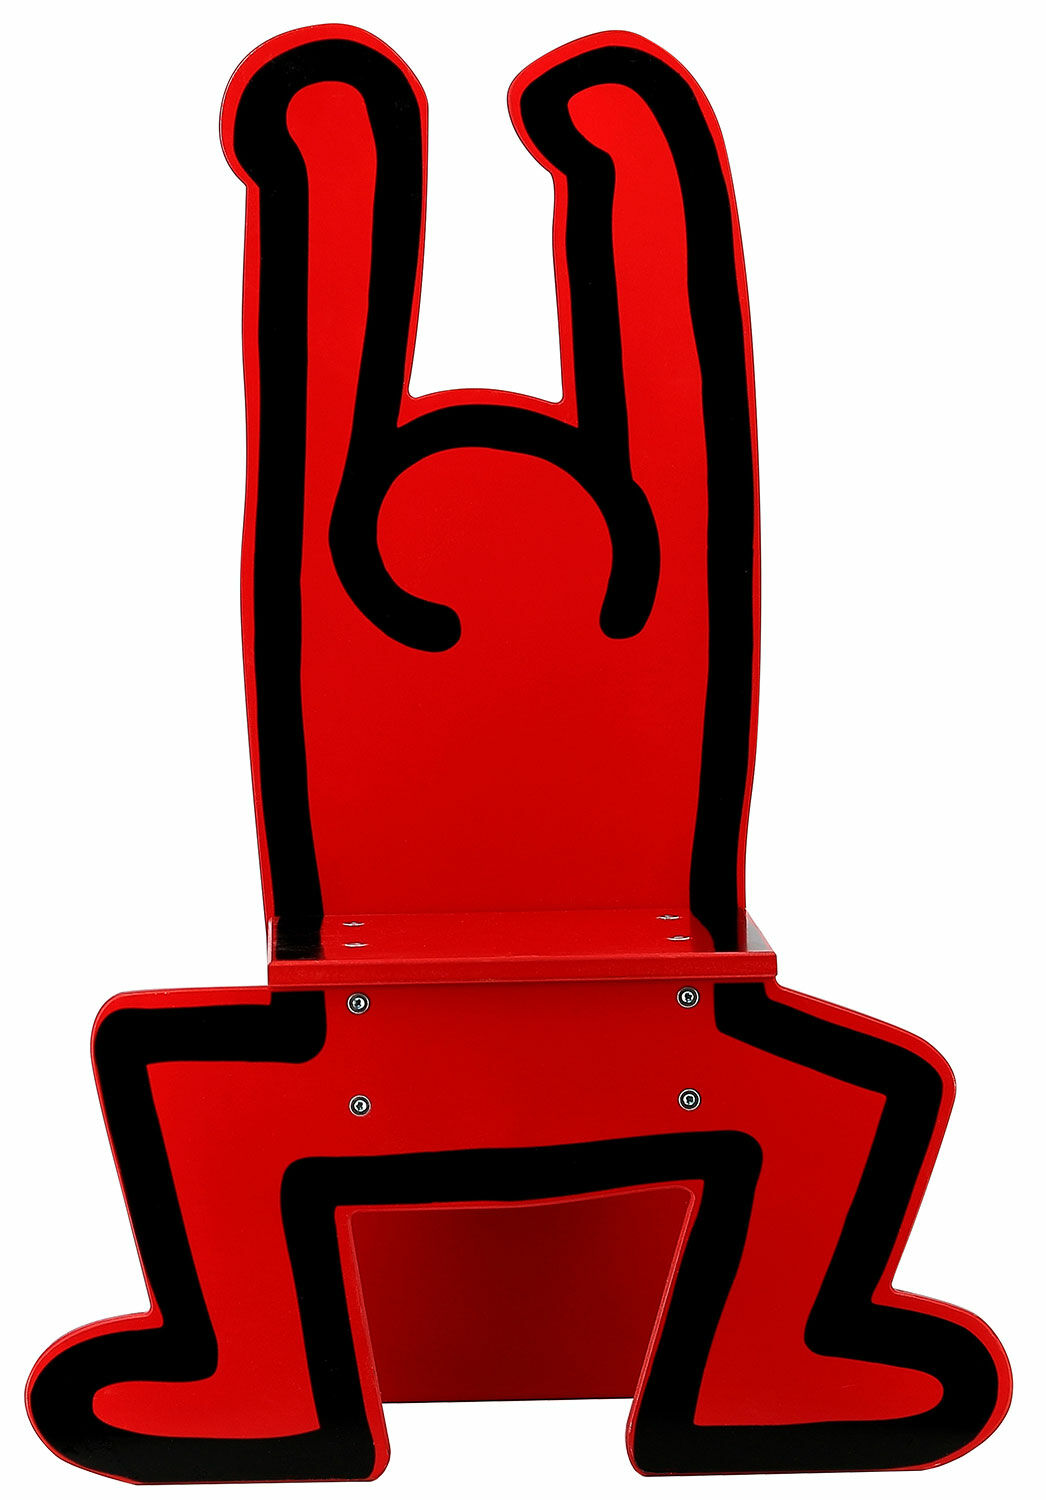 Kinderstuhl "Keith Haring", rote Version